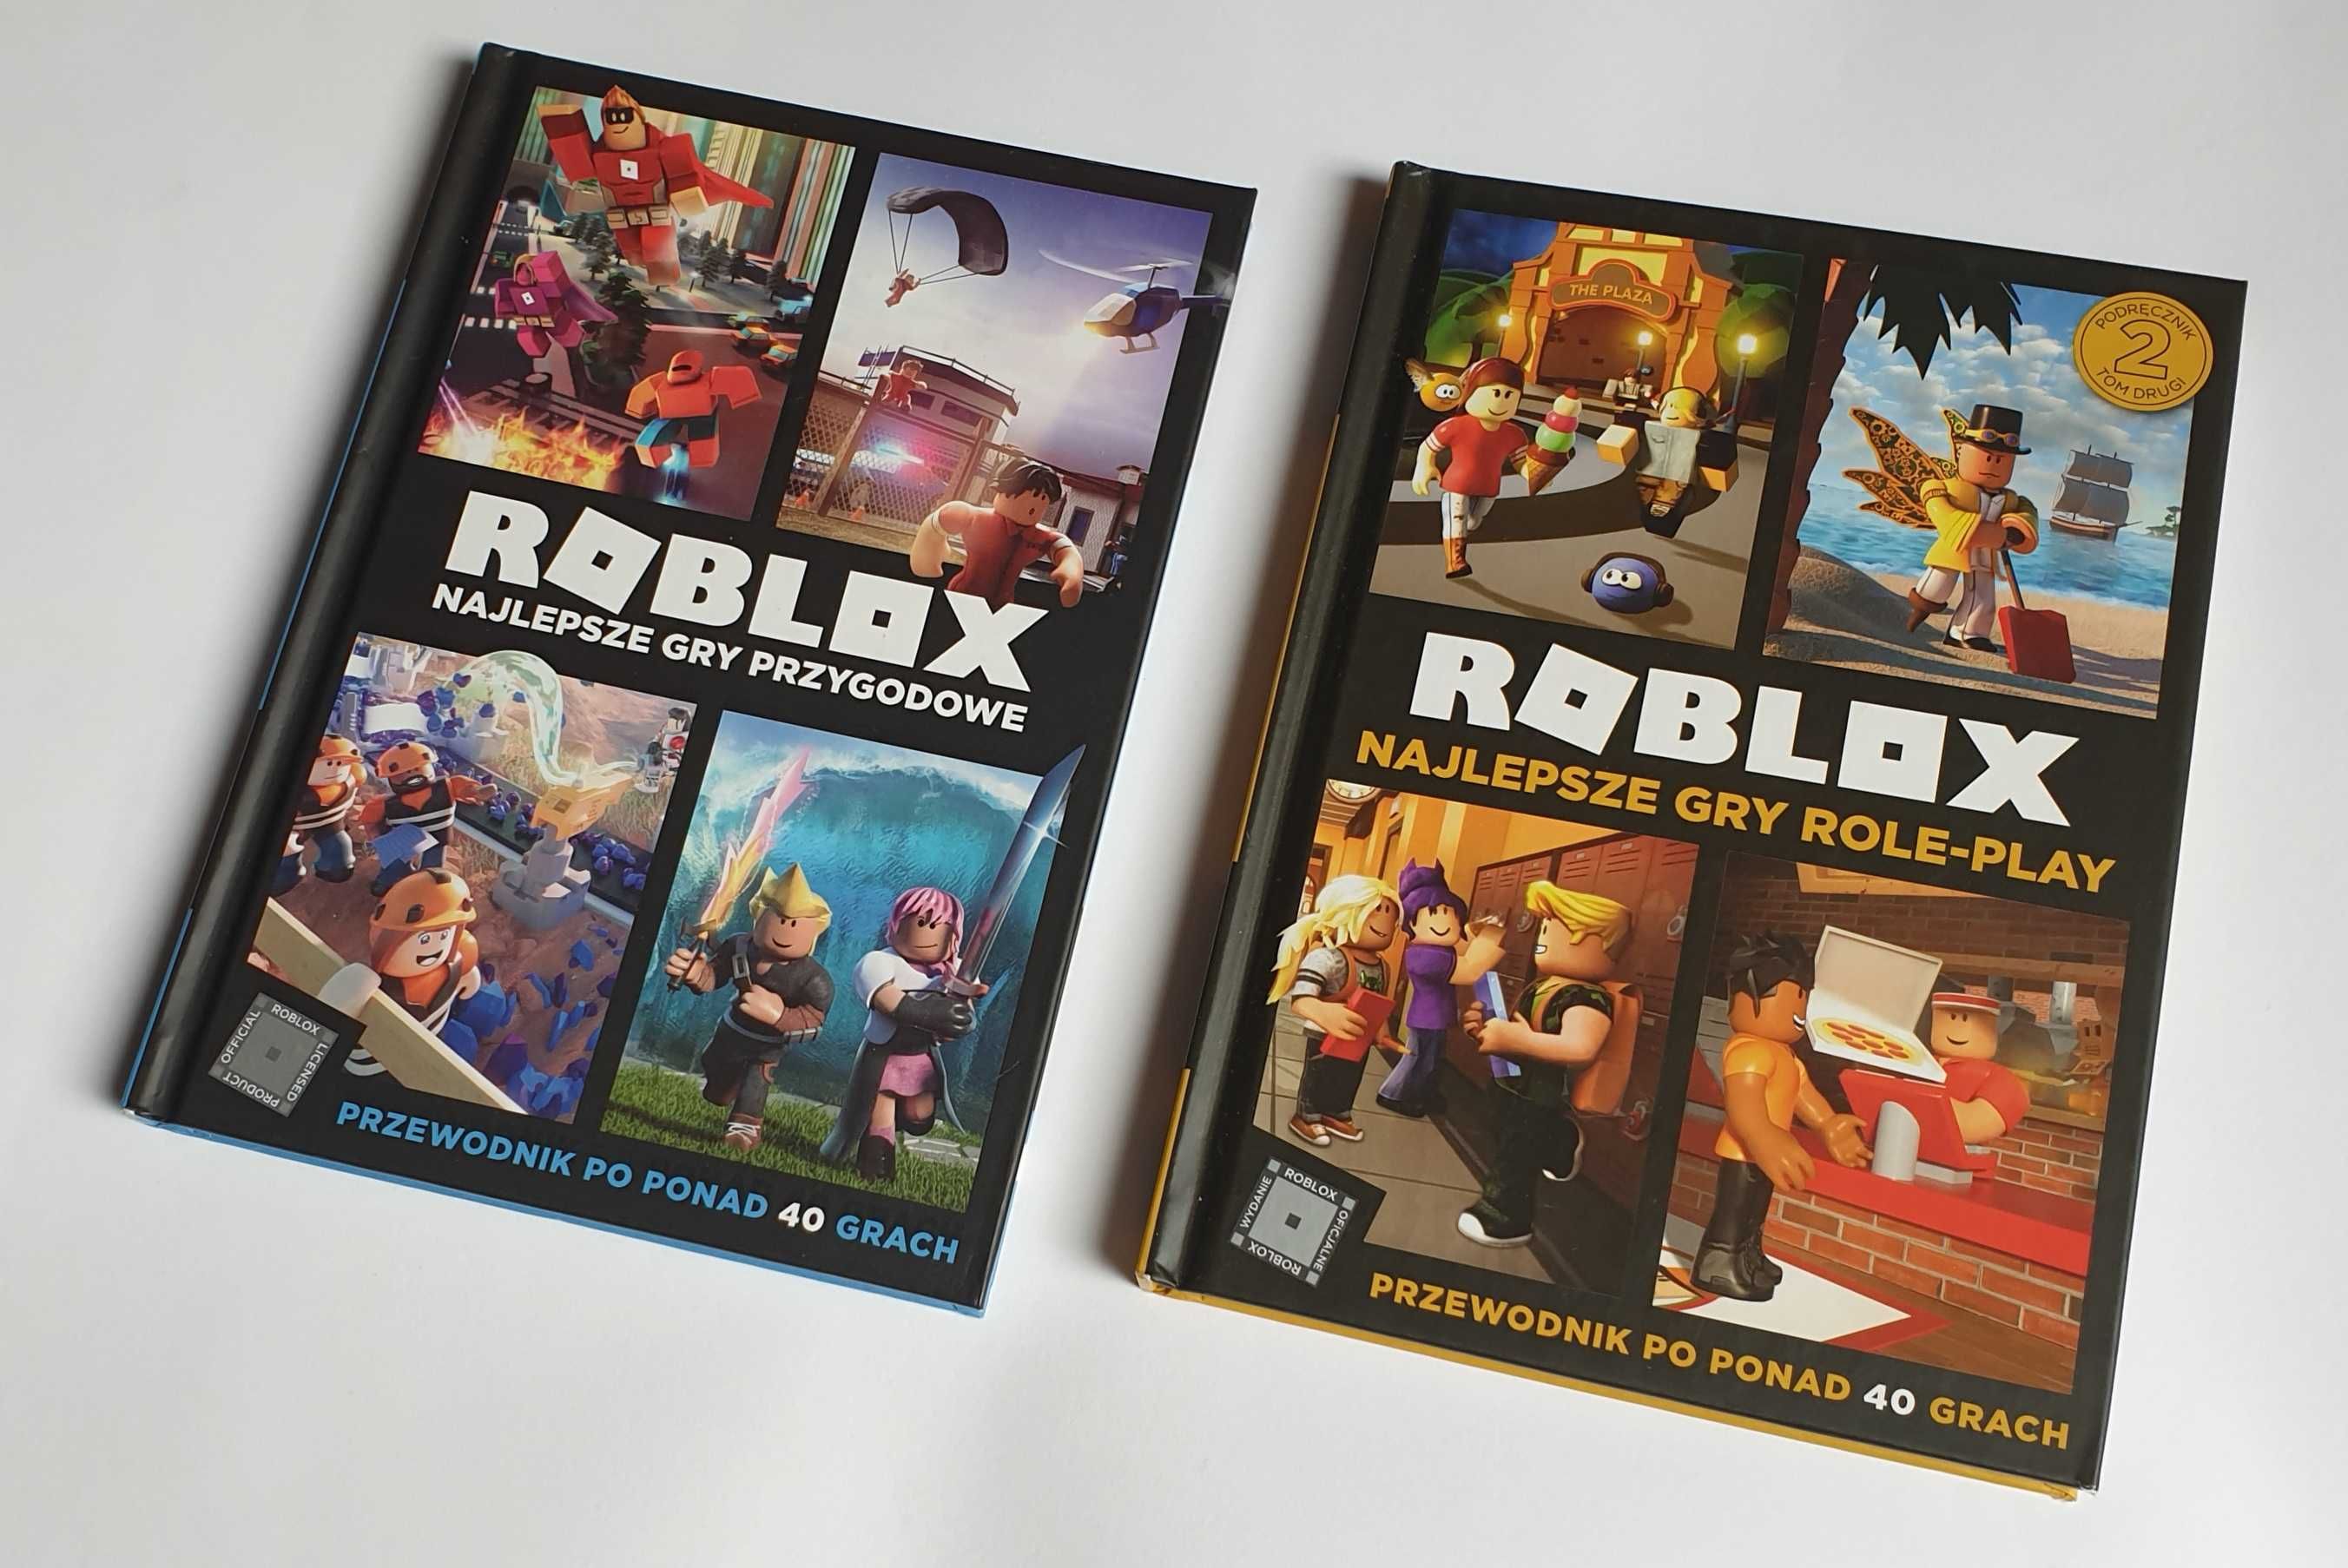 Roblox - Najlepsze gry przygodowe / Najlepsze gry Role-Play